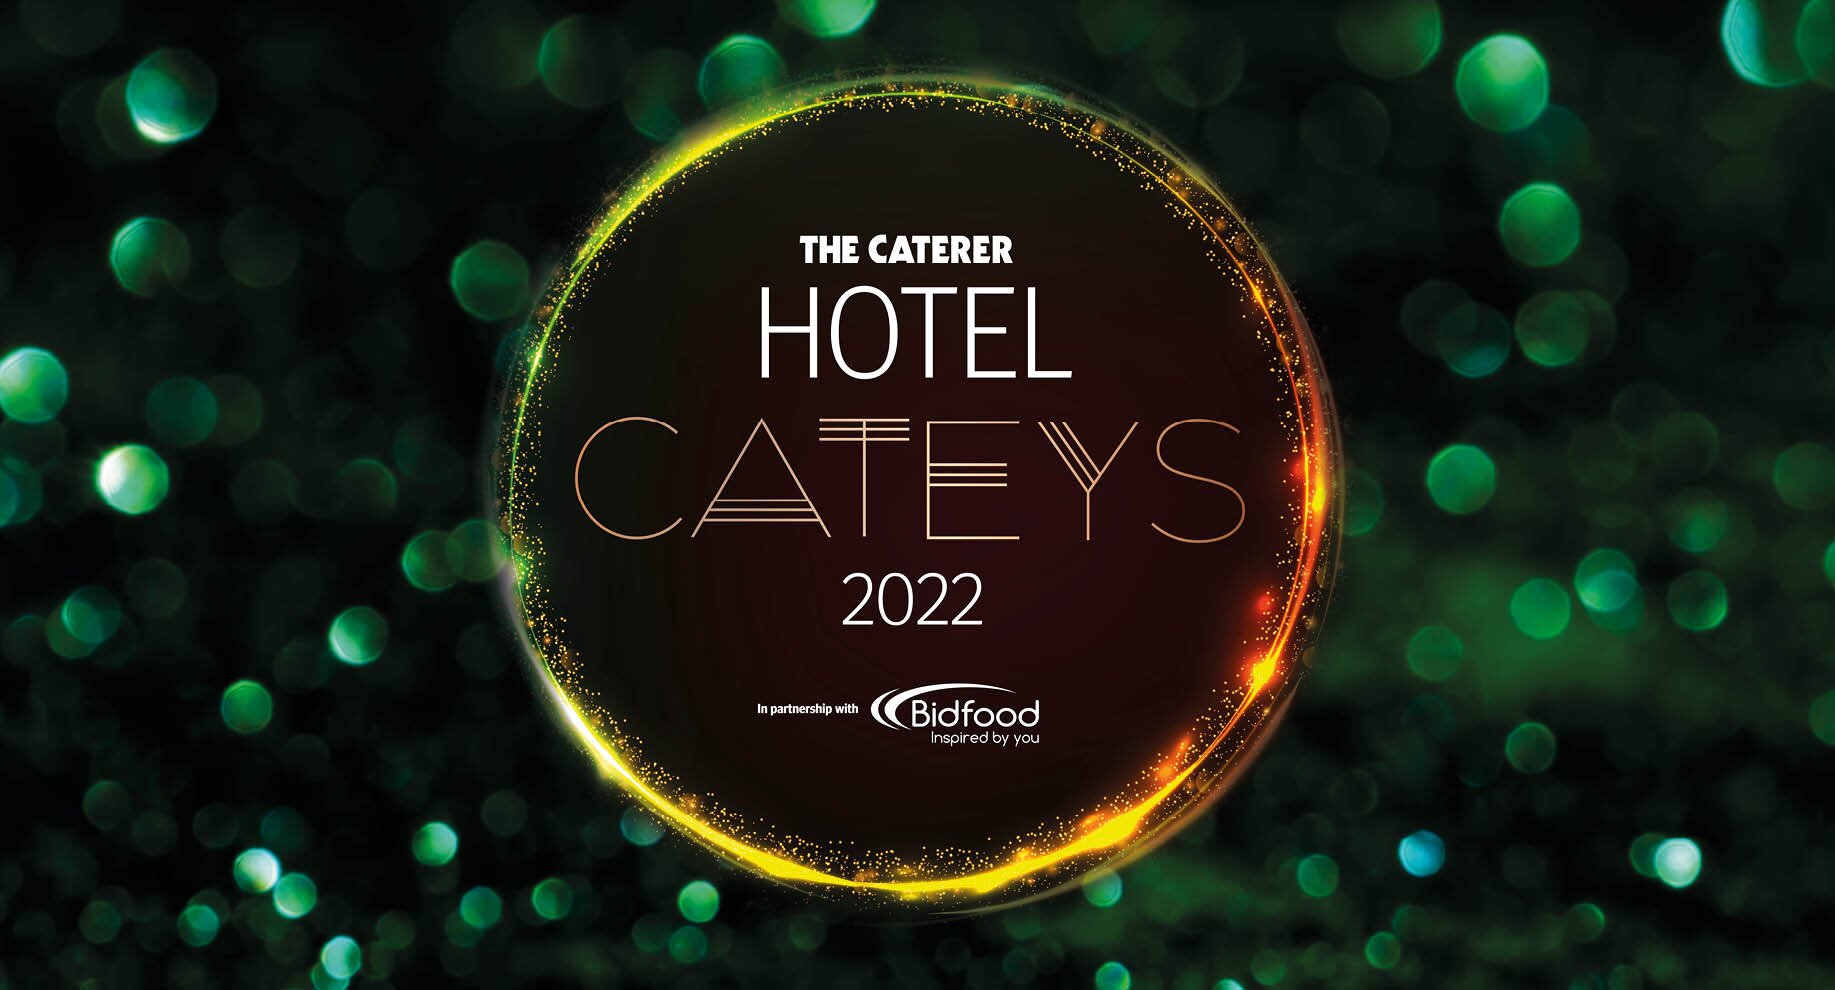 Hotel Cateys 2022 winners revealed